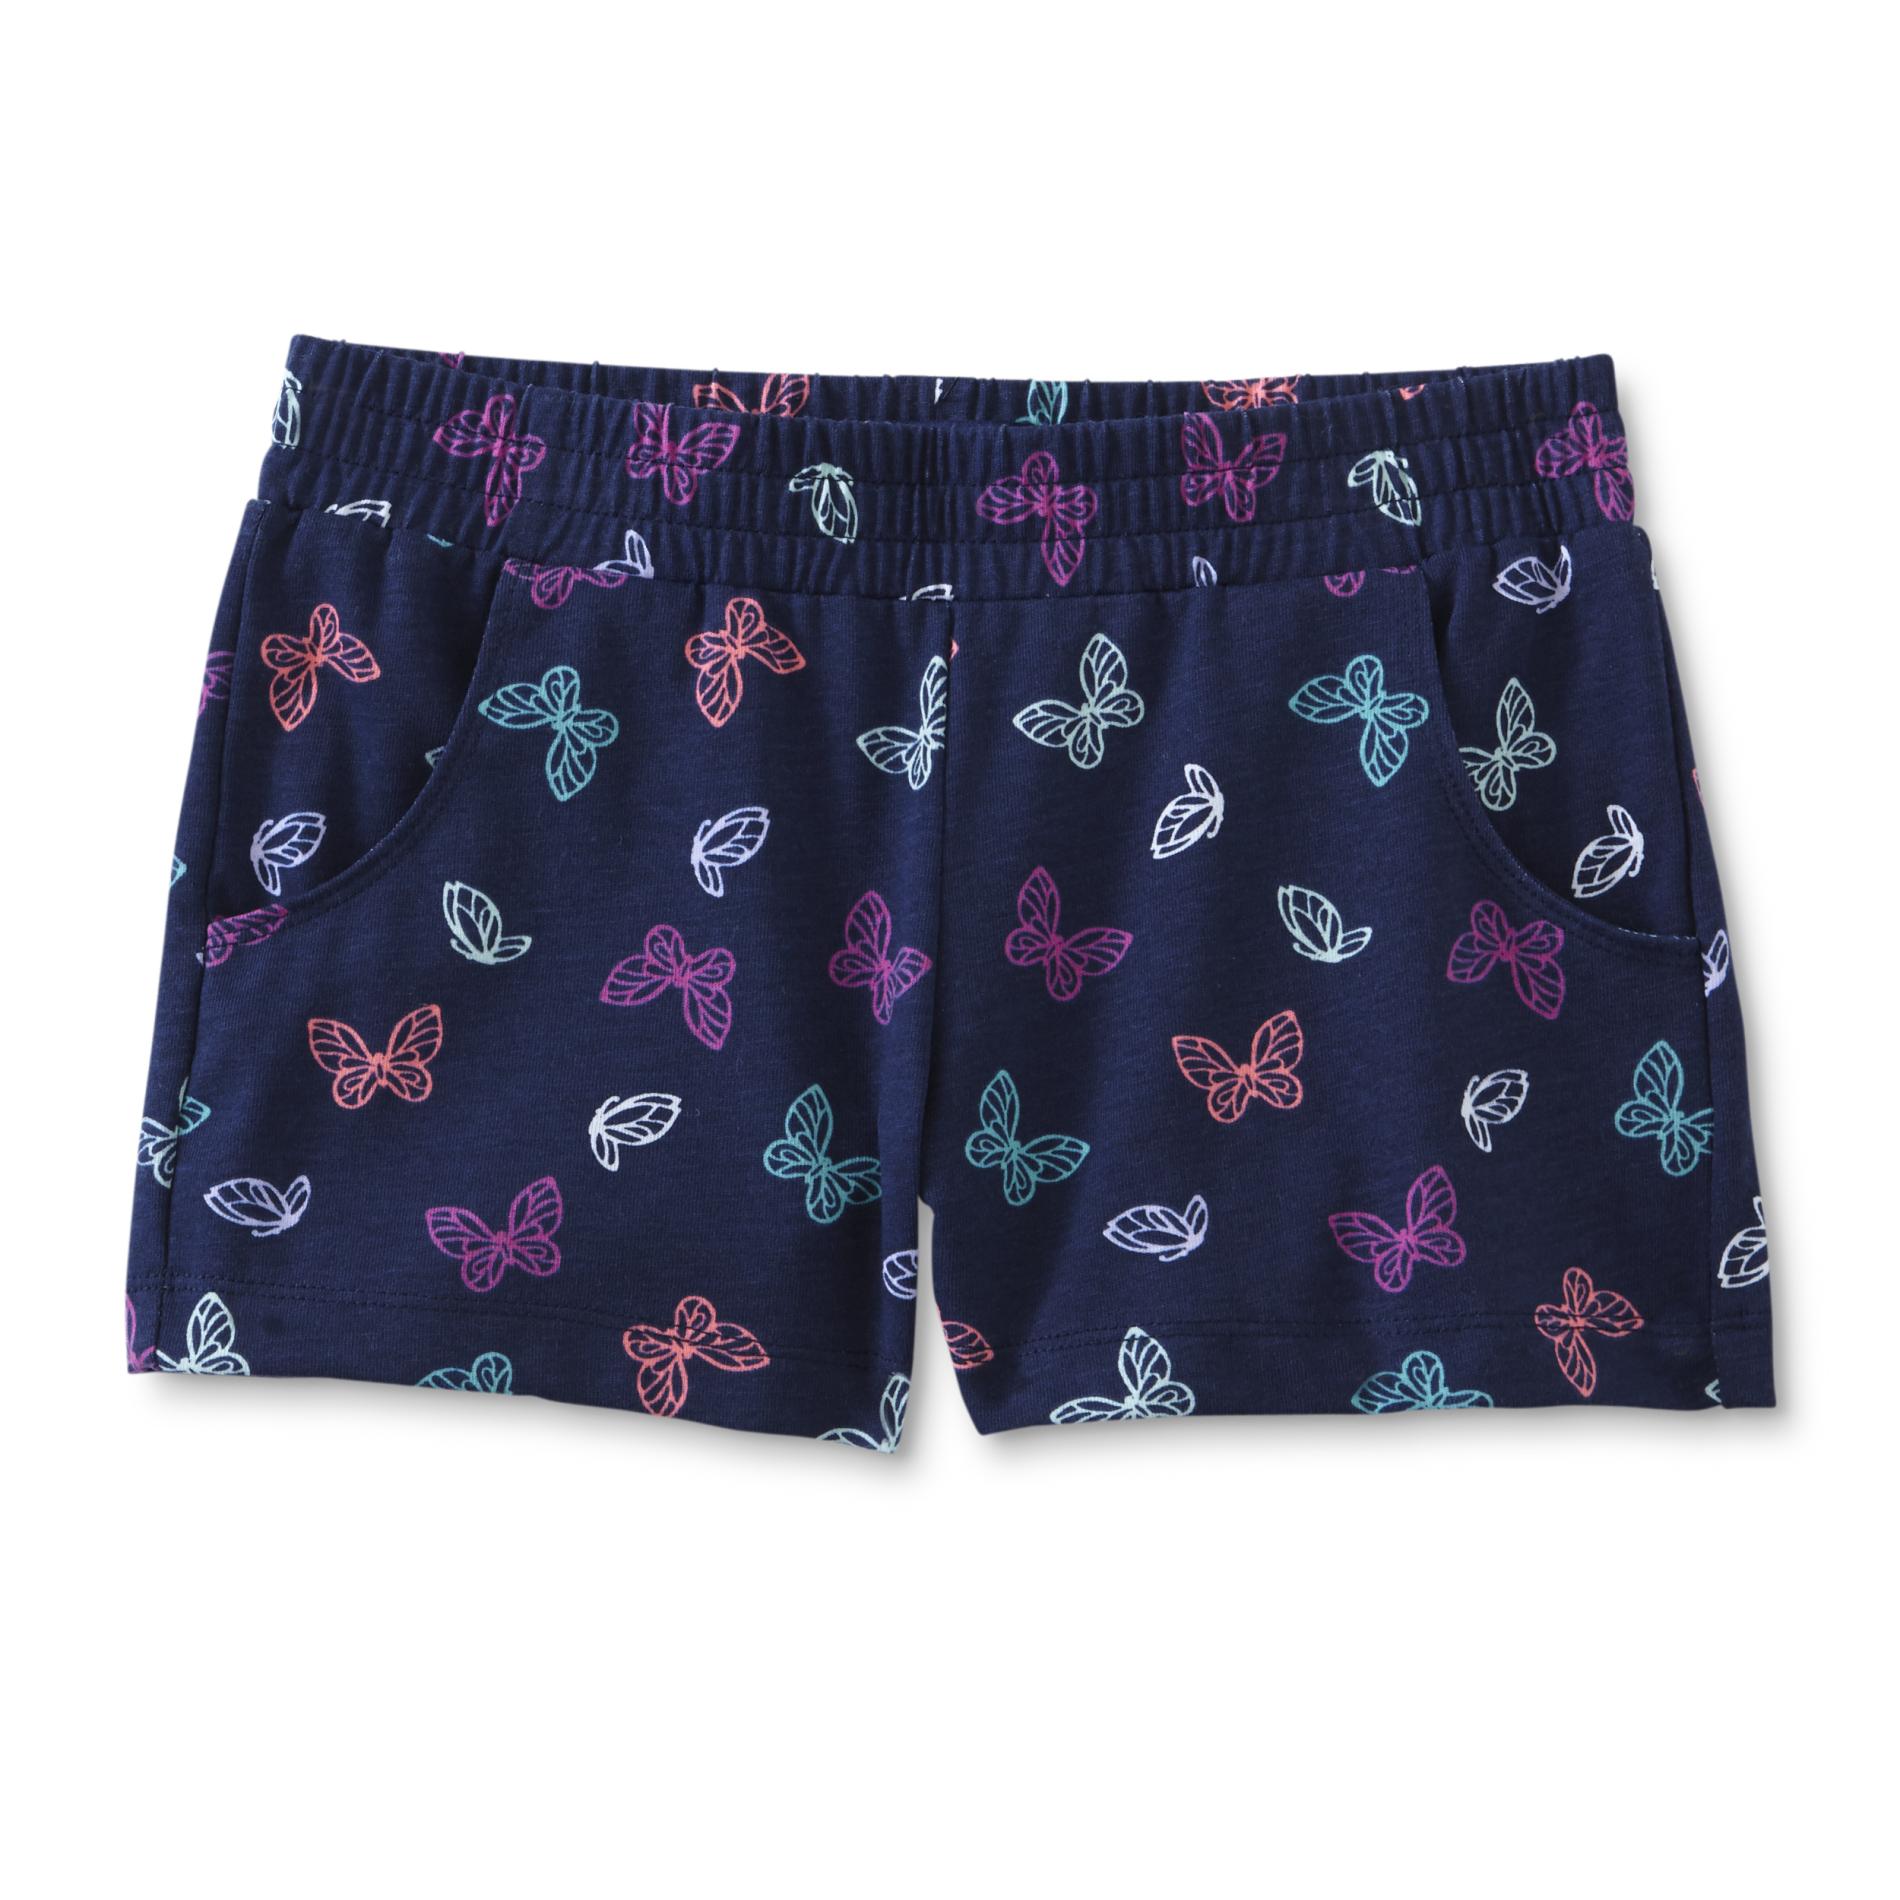 Basic Editions Girls' Knit Shorts - Butterflies